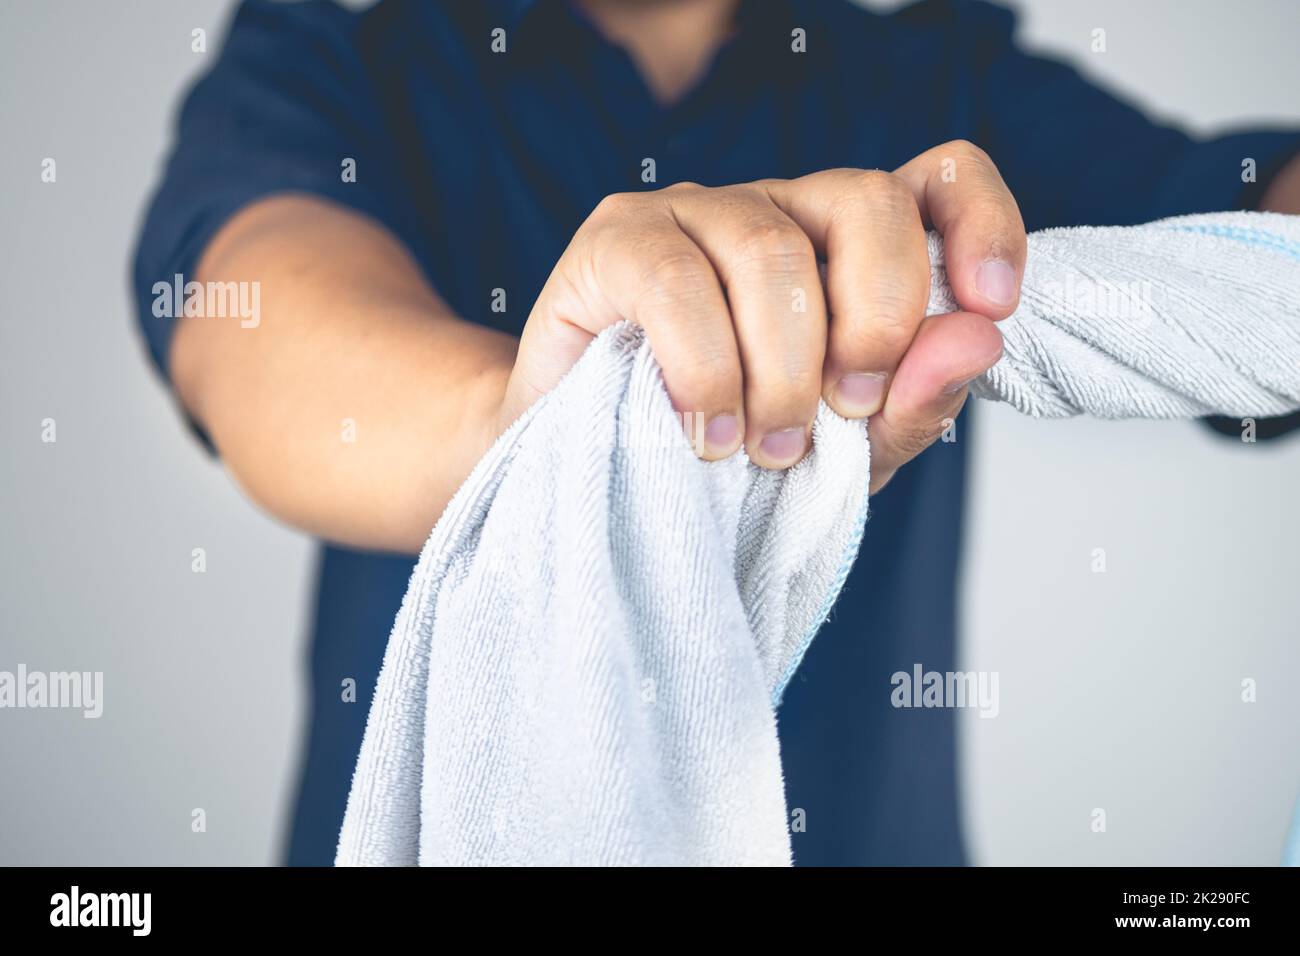 Der Mann dreht das Handtuch zur Massage und macht Physiotherapie am Arm. Ellenbogenverletzungen durch Tennis, Golf, harte Arbeit. Wissen im Gesundheitswesen. Mittlere Nahaufnahme. Stockfoto